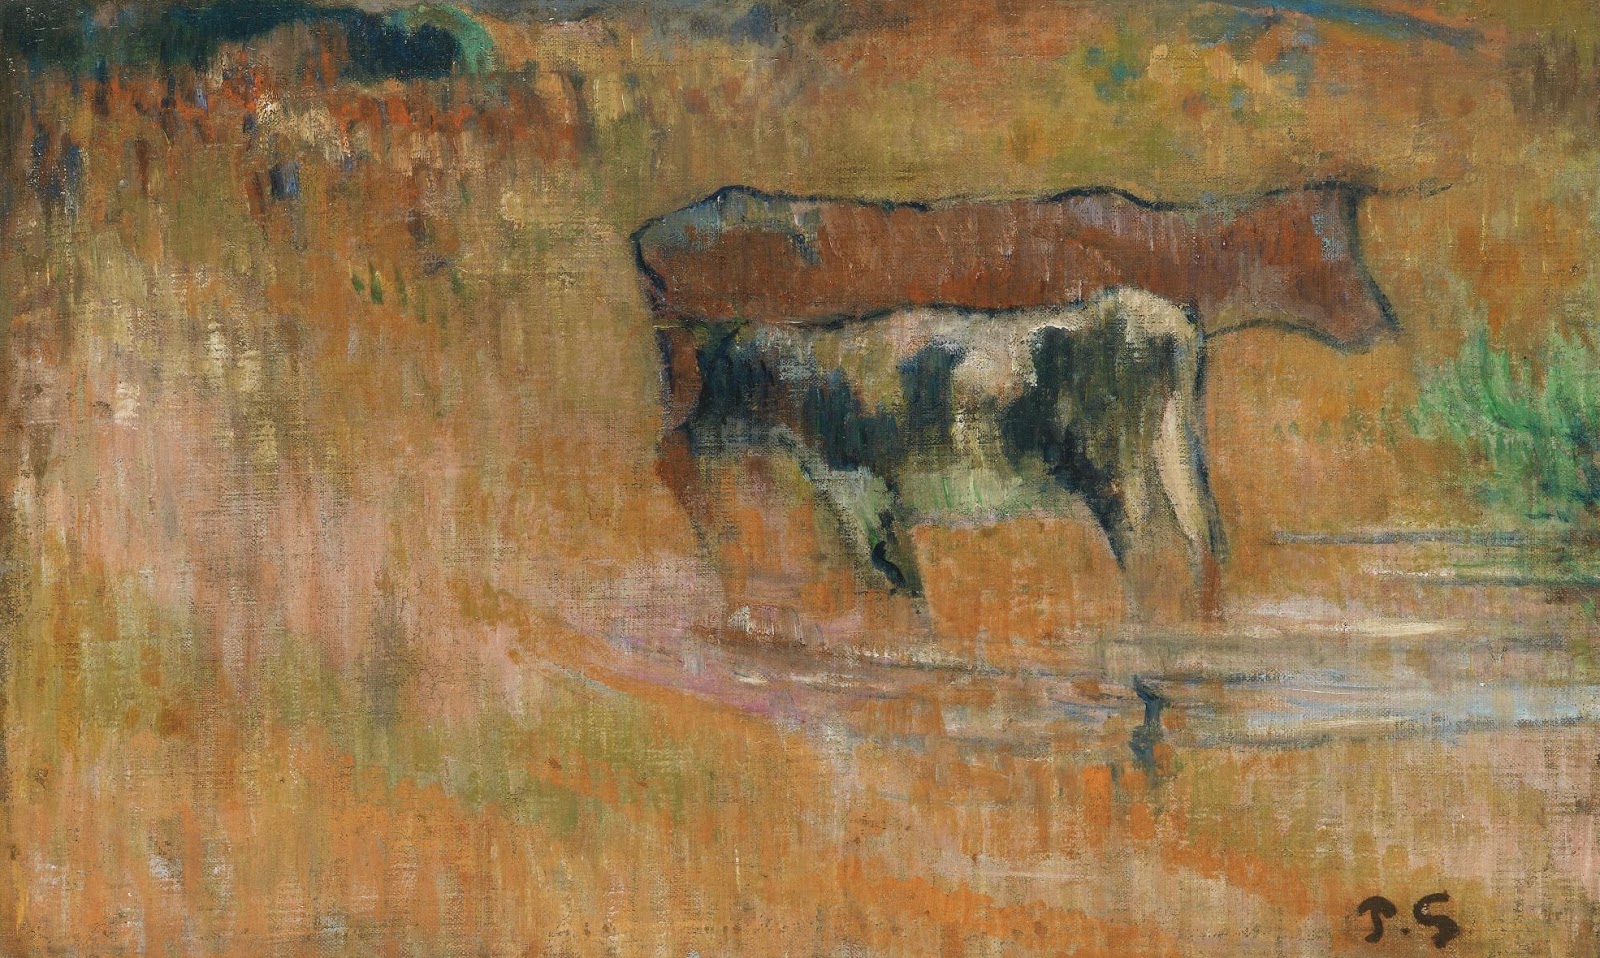 Paul+Gauguin-1848-1903 (391).jpg